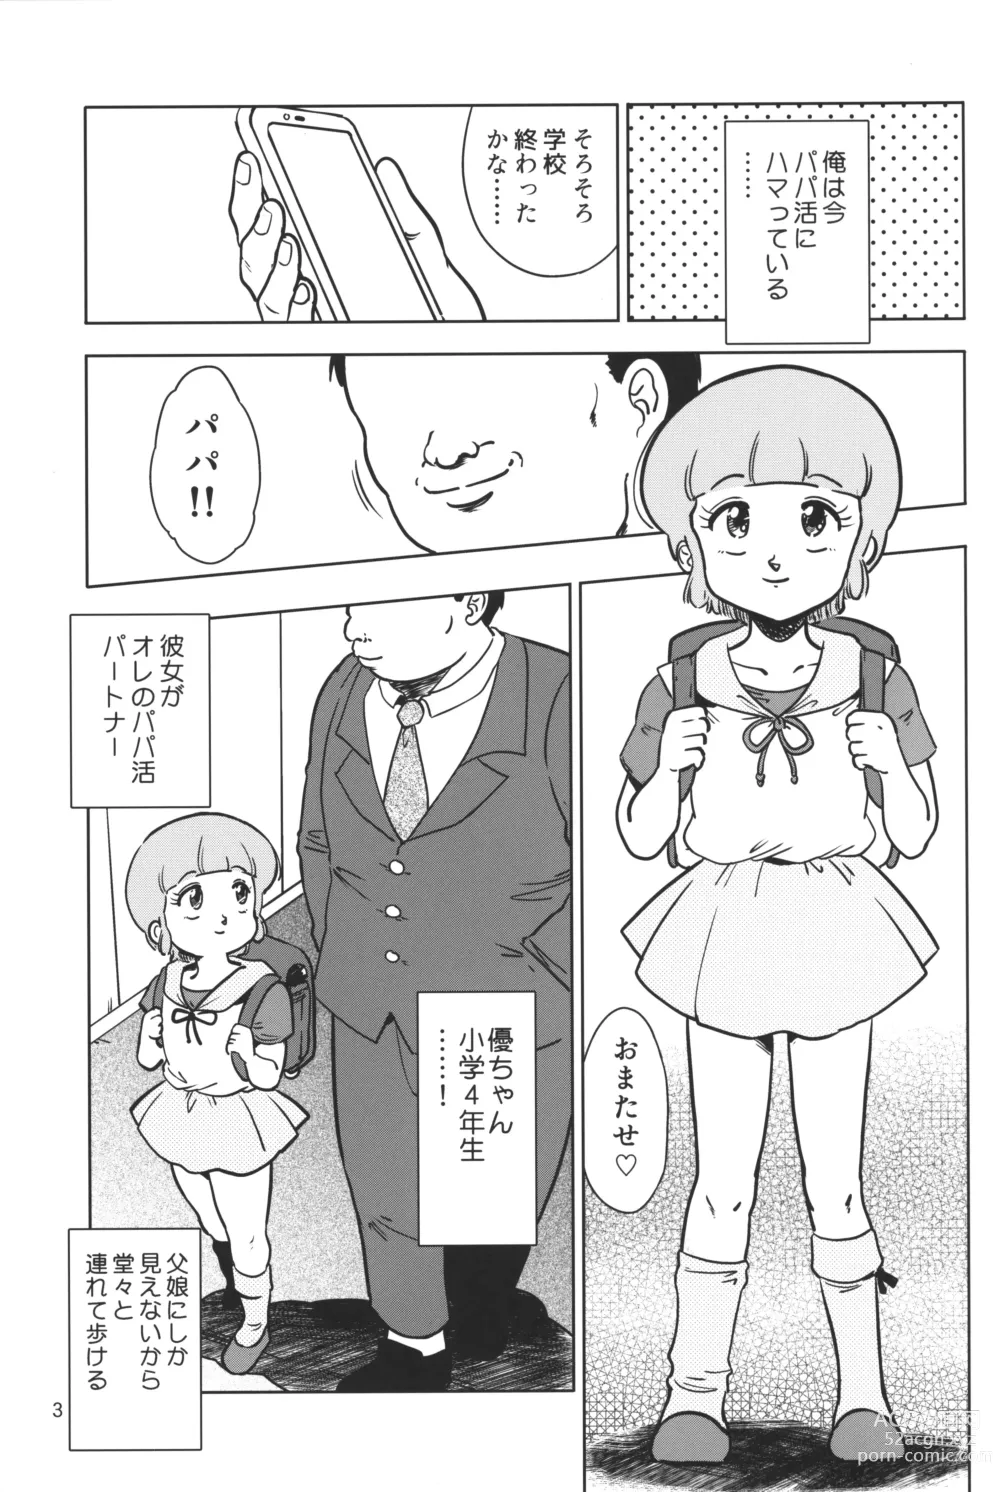 Page 2 of doujinshi Yuu no Papa Katsu